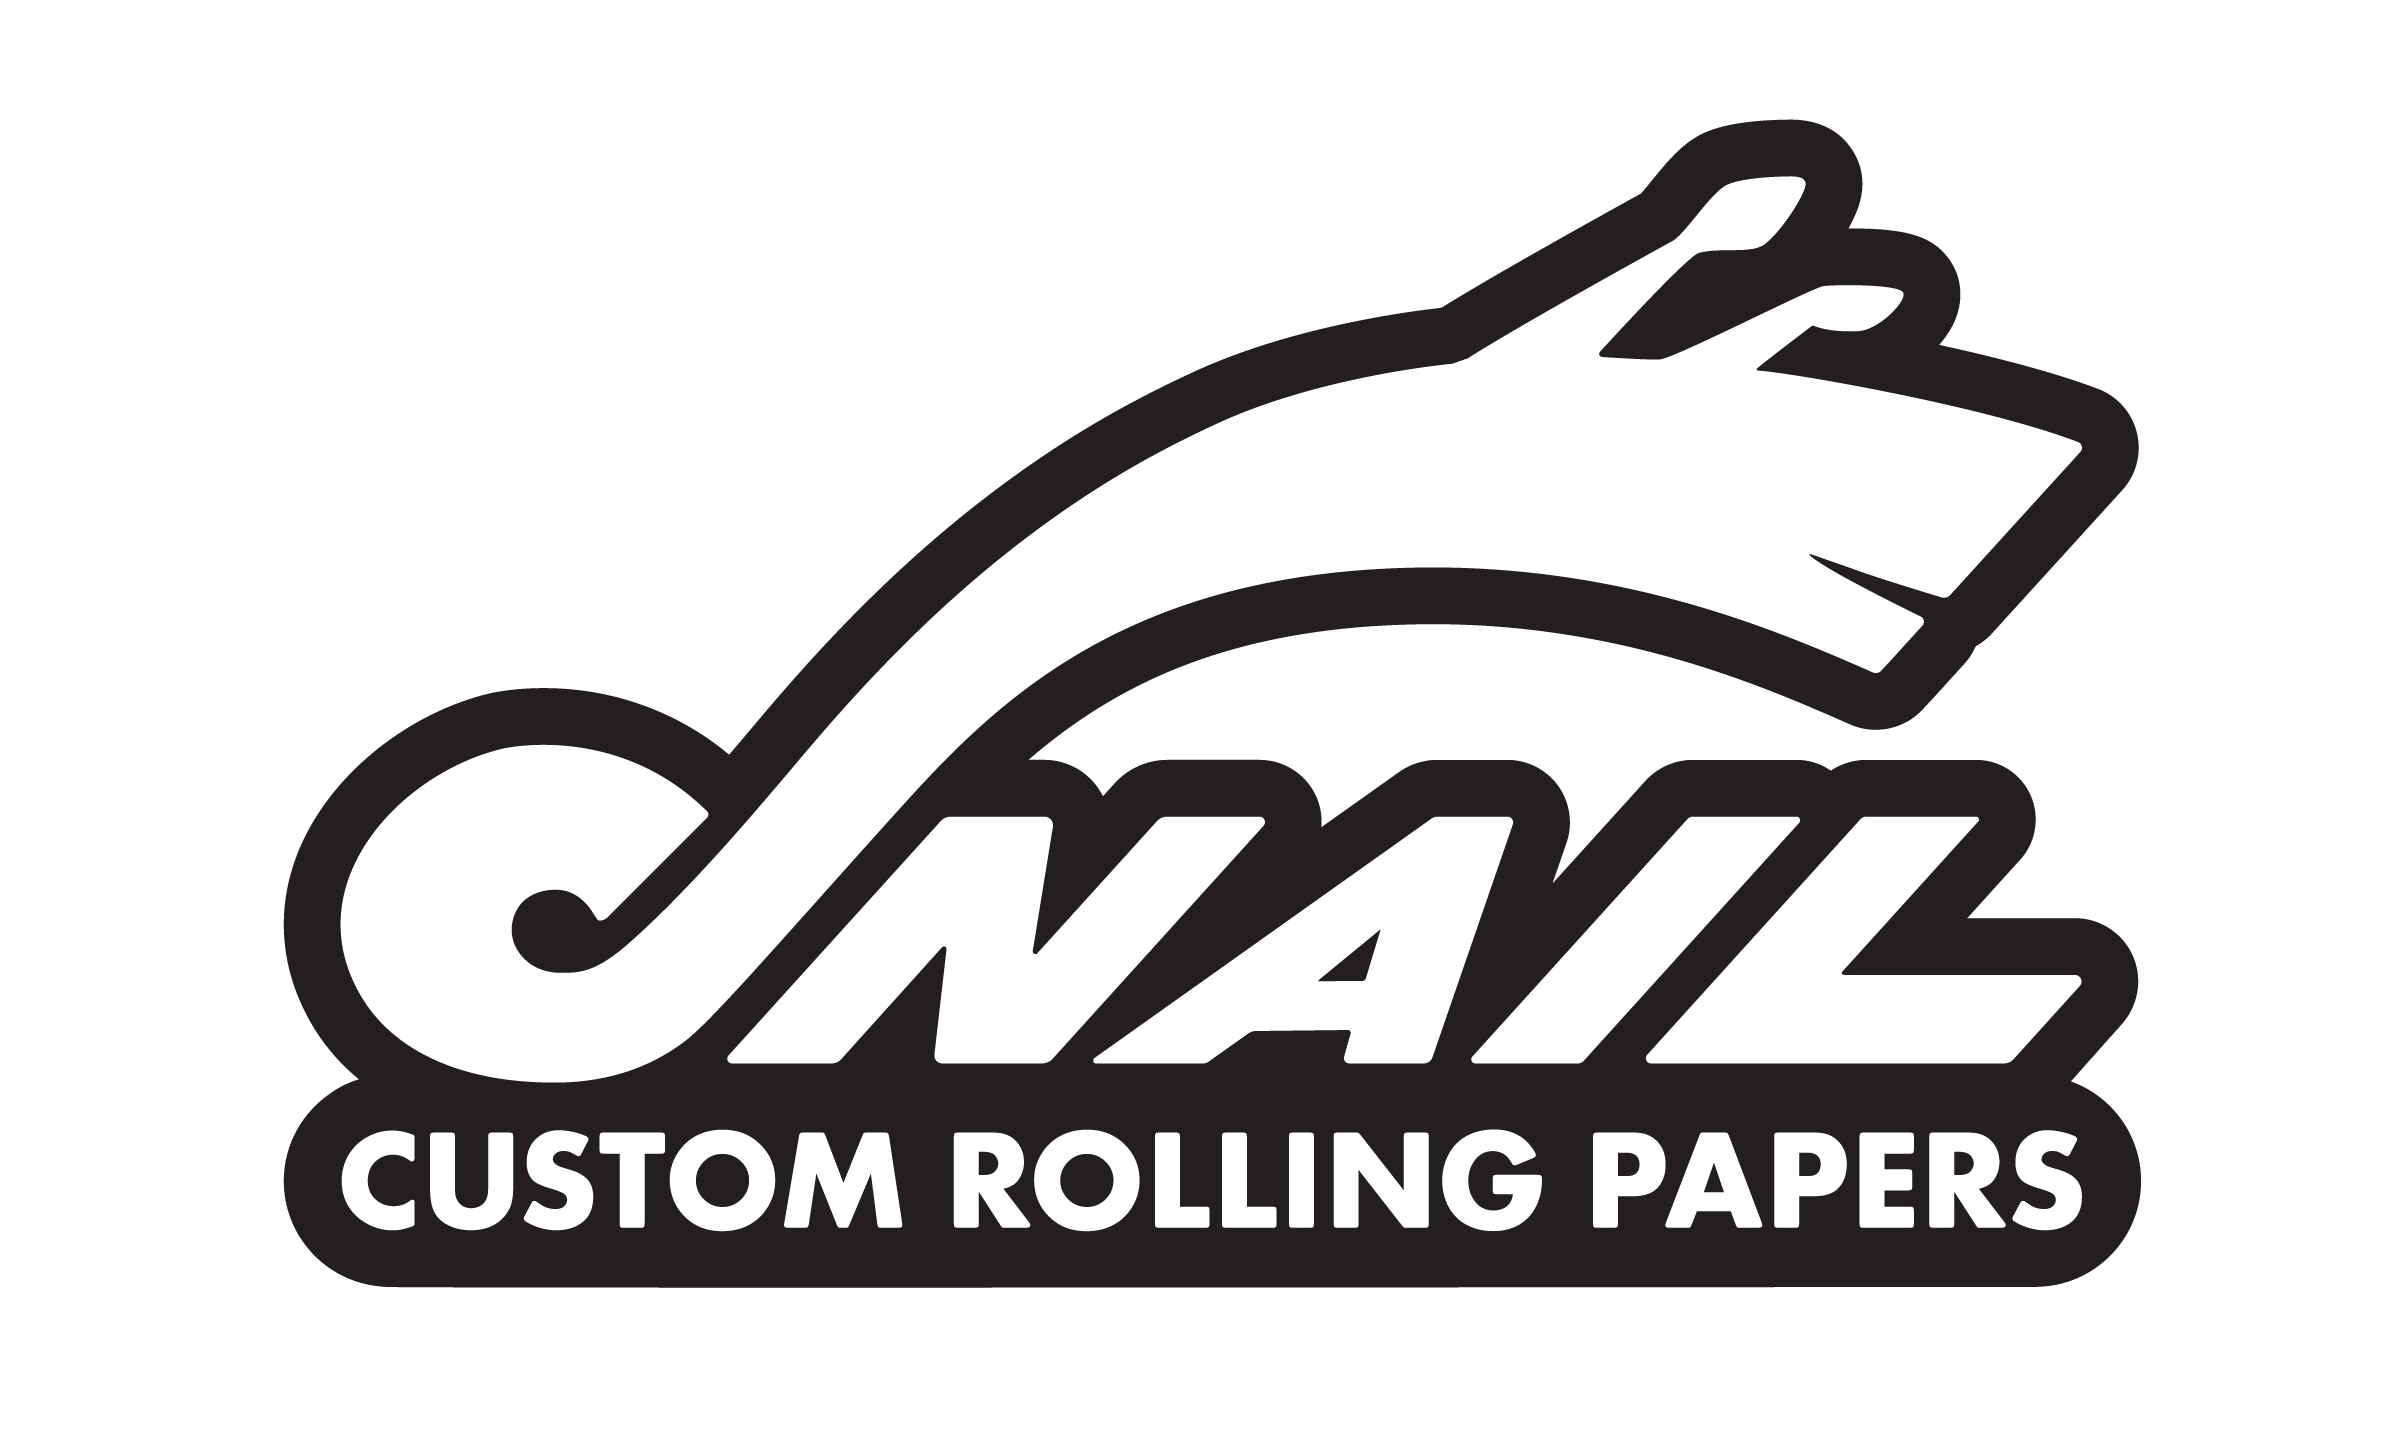 Custom Art Artist Paper Manufacturers, Factory